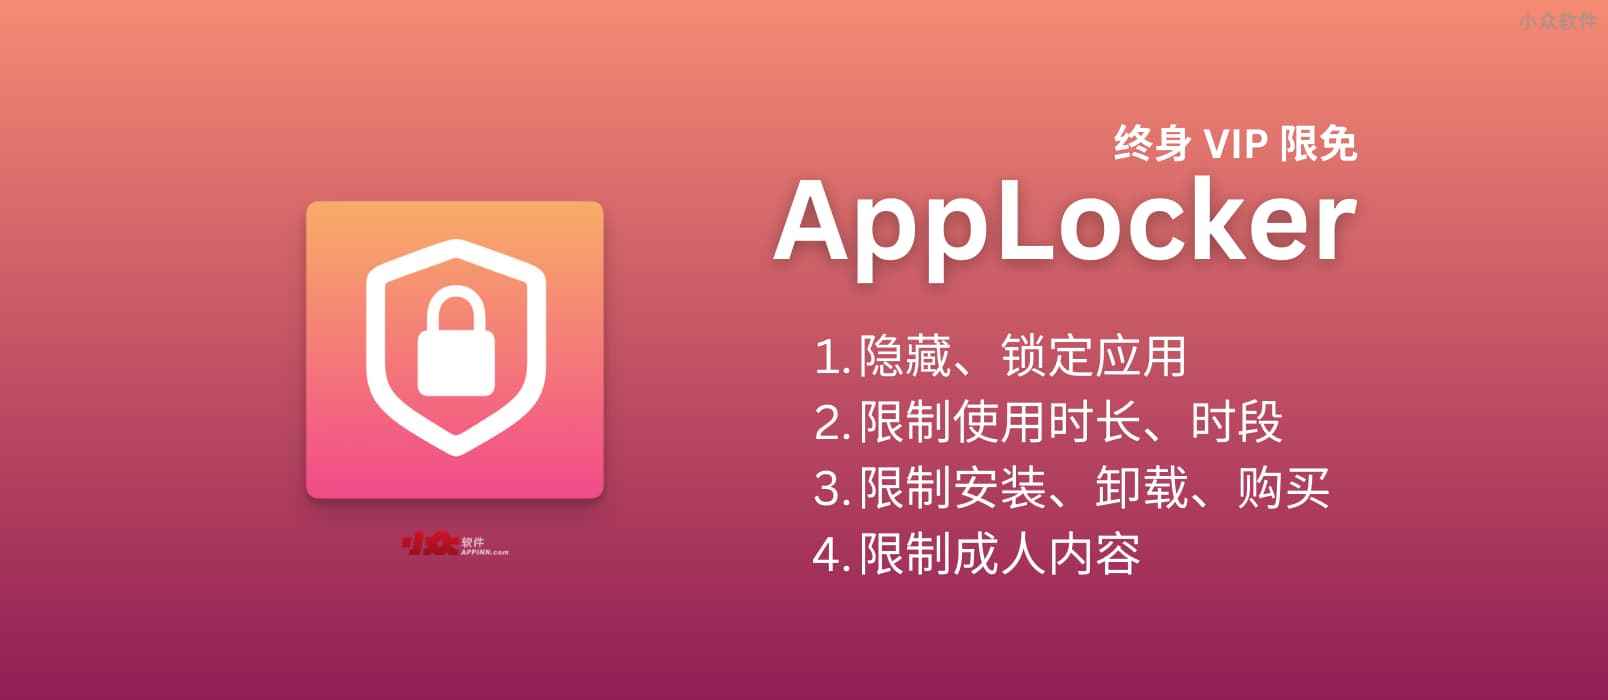 AALocker - 隐藏应用不再安卓专属，苹果用户也可以拥有了，终身 VIP 内购限免[iPhone/iPad]